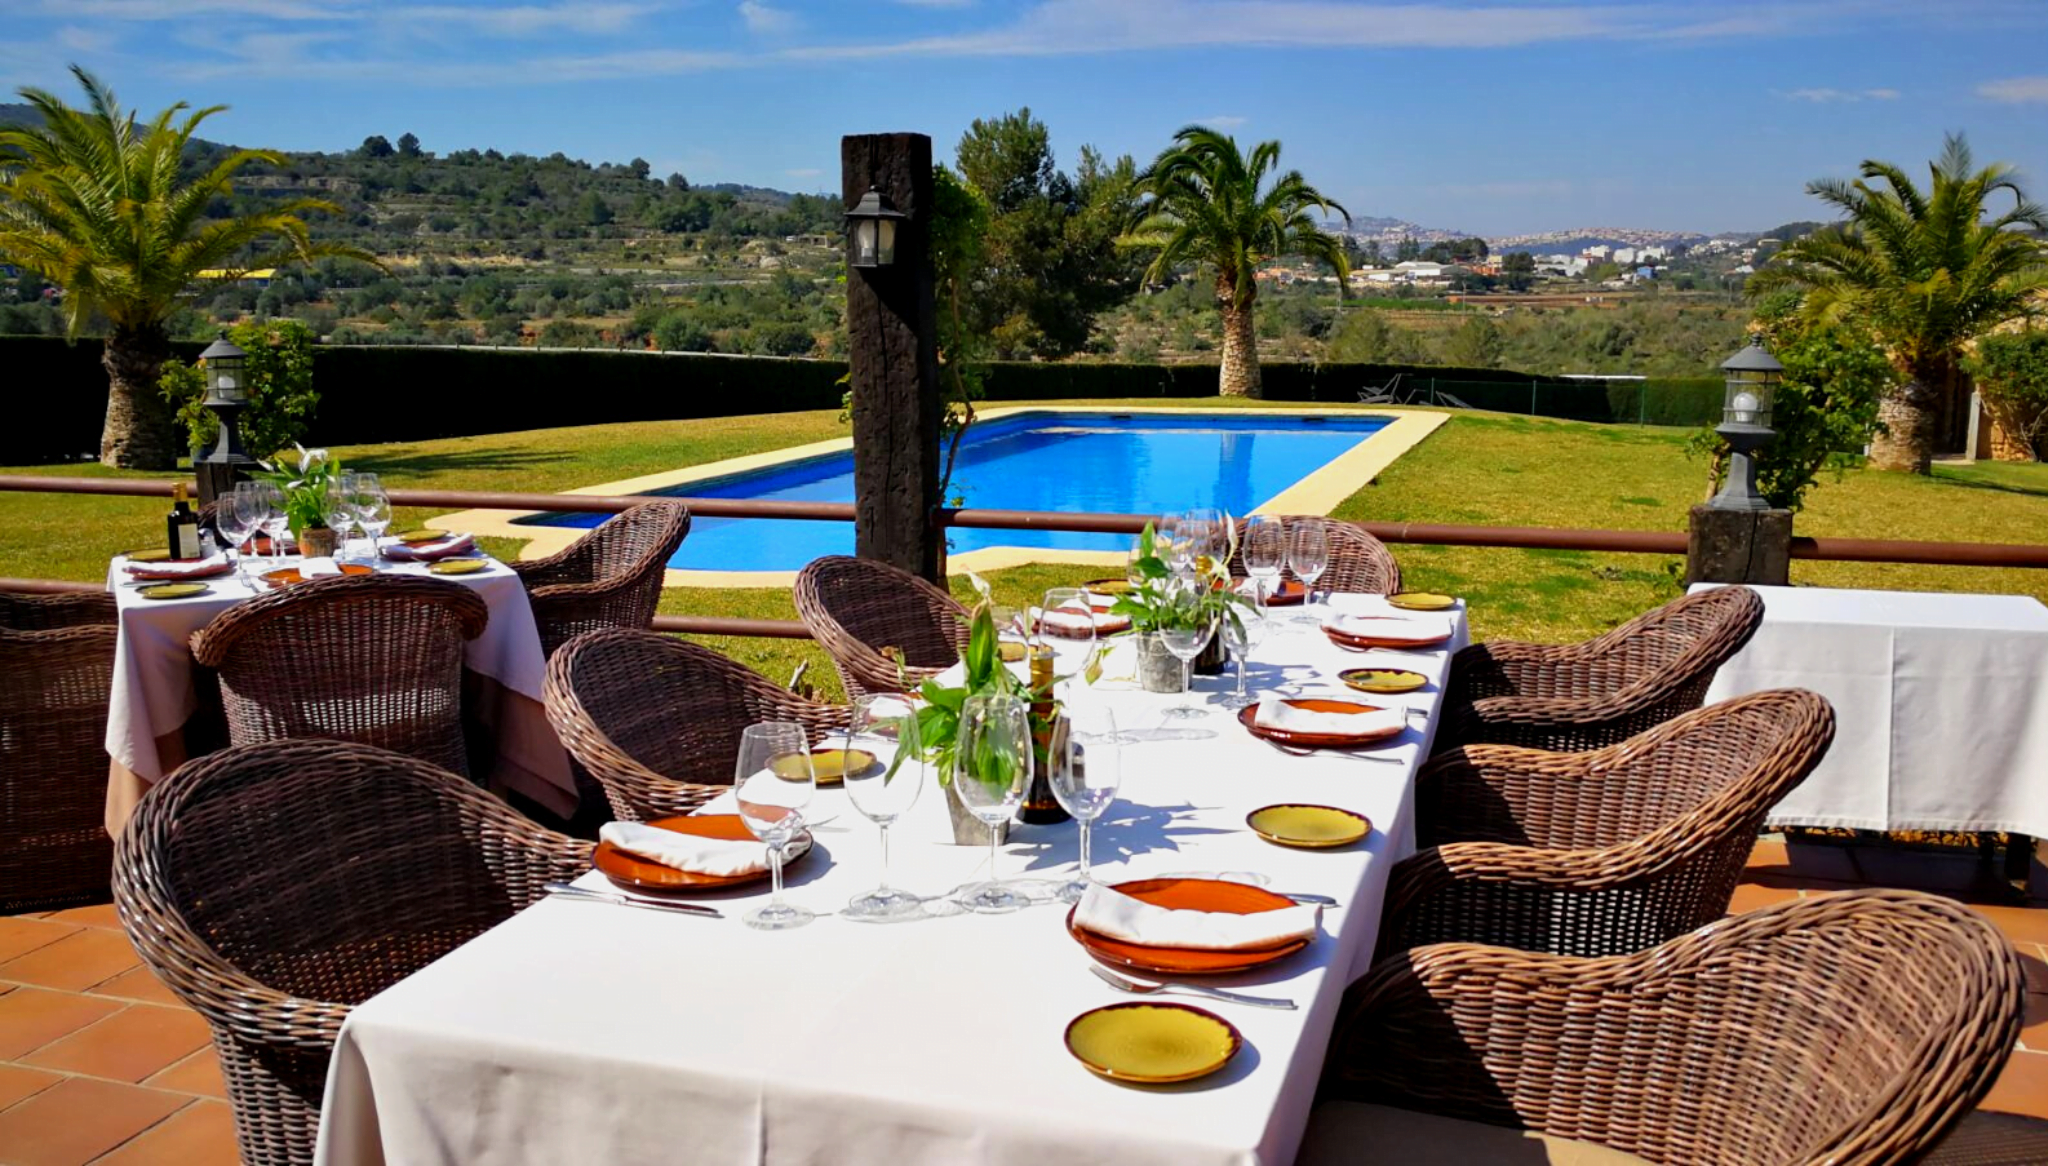 Restaurante con piscina en la terraza para comer en plena naturaleza